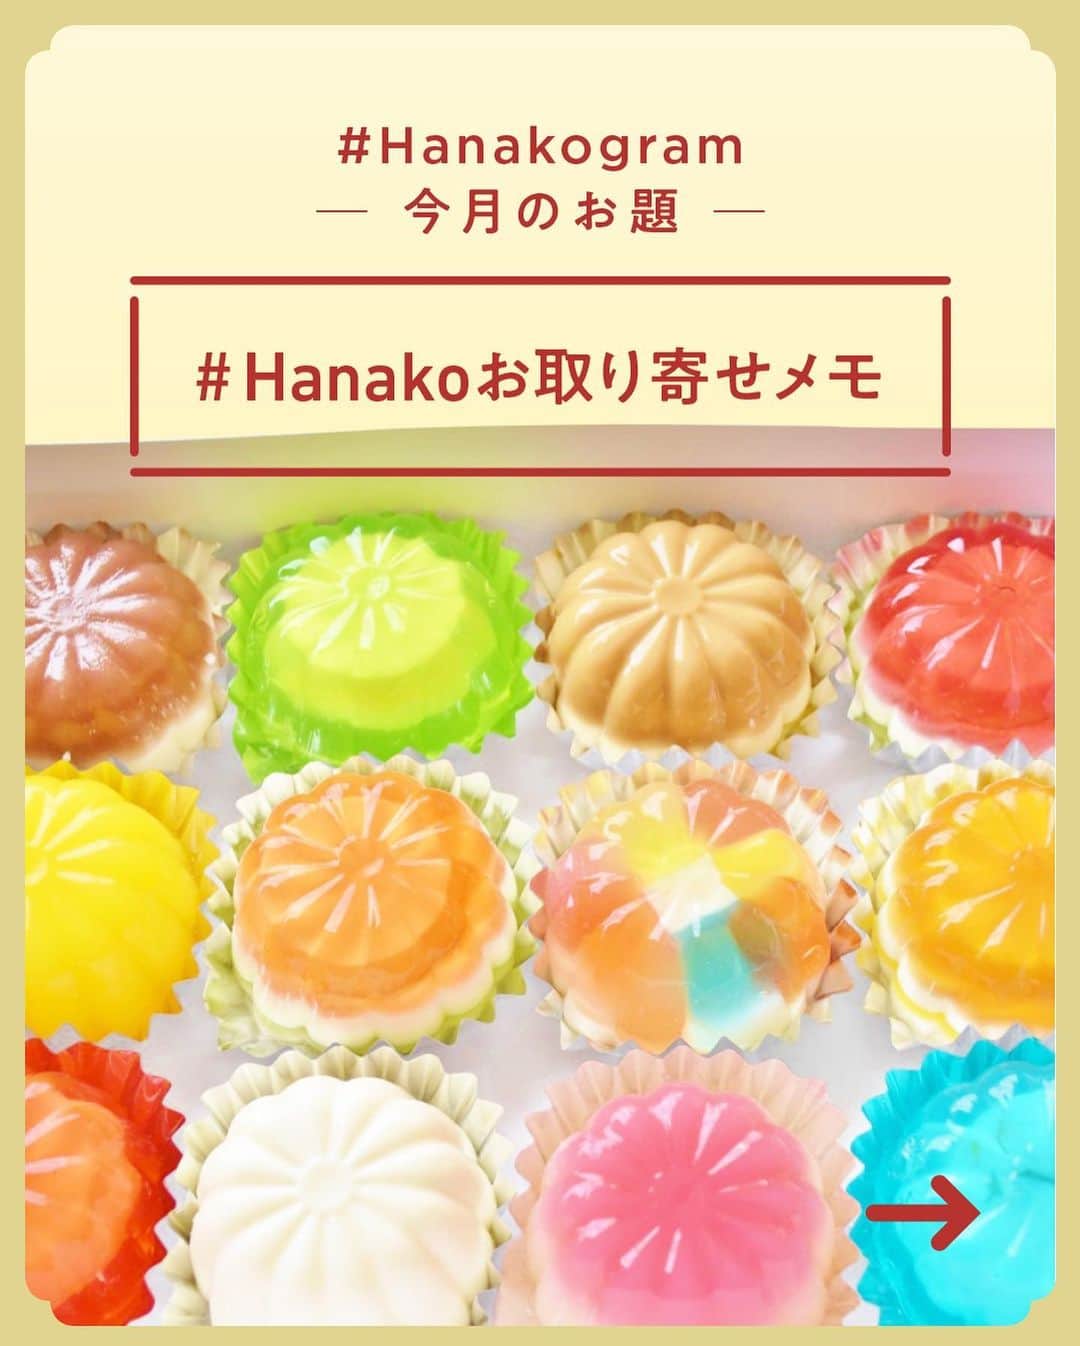 Hanako公式さんのインスタグラム写真 - (Hanako公式Instagram)「#5 Hanakoお取り寄せ図鑑🥛﻿ フードディレクター・野村友里さんがHanakoで連載中の『Good Neighbors,Good Suppliers』。 約6年の連載の中で出会ったお取り寄せ食材をご紹介します。﻿ ﻿ ﻿ 1.〈里山みらい〉の「すだちち」﻿ 徳島県神山町、すだちの生産量日本一の地で開発された「すだちち」は、土地の米を発酵させた甘酒に、すだちと少しの塩を加えて、疲れた体を養うドリンク。現在は町内限定販売のみ、8月頃から取り寄せ可🍊﻿ ﻿ 2.〈かまパン&ストア〉の「食パン」﻿ 〈ルヴァン〉や〈宗像堂〉で修業した塩見聡史さんと、イーストでのパン作りを学んだ笹川大輔さんが「日常の」食パンを作りました。モチモチの「いつもの食パン」(右)と、ジャージー牛乳をたっぷり使った「超やわ食パン」(左)🍞﻿ ﻿ 3.〈日和佐燻製工房〉の「燻製」﻿ 徳島の綺麗な海でその時獲れた魚を、間伐材の山桜でスモーク。たくさん獲れた魚を無駄にしないために始まったという燻製は、温度や漬けだれを工夫して今のスタイルになったのだそう🐟﻿ ﻿ 4.〈三谷製糖〉の「白下糖」﻿ 地元・香川産のサトウキビの搾り汁からアクと沈殿物を取り除いて煮詰めていくという、江戸時代から香川県に伝わる製糖の技術で作られた砂糖。スッキリとした甘さが特徴。同量の水で煮詰めて、お菓子や料理に使える万能シロップに🦢﻿ ﻿ 5.〈souju〉の「オリーブ&オリーブオイル」﻿ オリーブを専門に育てる農園。生産から収穫、加工まで行い、多彩なアイテムがそろっています、「エキストラバージンオリーブオイルルッカ」(右)、ミッション種を塩分控えめに仕立てた「塩蔵オリーブ」(左)🌿﻿ ﻿ 6.〈やまくに〉の「パリパリ焙煎いりこ(プレーン)」﻿ 最上級の銀付きいりこの頭、内臓をひとつひとつ取り除き、香ばしく焙煎。手間がかかる分、雑味のない濃厚な旨味が引き出せる。もちろんだし用としても活用できるが、まずはそのままパリパリと味わうのがおすすめ🐟﻿ ﻿ 7.〈ファーム・ベジコ〉の「コリンキー」﻿ 知の気候風土に合った野菜作りをするファーム。コリンキーは、シャキッと歯応えがいいカボチャの一種だ。自然栽培ならではの持ち味を楽しむなら、コリンキーぜひサラダで。収穫期は3~7月で、時季により直接購入可。HPから問い合わせを🎃﻿ ﻿ 8.〈 KOCHI GOOD FOODS〉の「温州みかんジュース」﻿ 地元の農産物をさまざまな形で届けるお店。皮ごと搾った「季節の柑橘ジュース」もその一つで、温暖な高知の地で栽培された、早生の温州みかんなどが楽しめる。果汁100%、甘くまろやかな味わいは完熟したみかんならではのもの🍹﻿ ﻿ 9.〈国友農園〉の「りぐり山茶」﻿ 高知の山間部に自生する山茶は、四国の人々には古くからおなじみ。無農薬で育った茶葉を、風味を壊さないよう丁寧に手摘みして釡炒りに。土の養分や岩のミネラルをたっぷり含んだ「りぐり山茶」には、写真の「風蘭香」などが🍵﻿ ﻿ 10.〈岡岩商店〉の「干物」﻿ 漁師から適正価格で仕入れた魚を、無添加でおいしい干物に。フェアトレードと自然環境への配慮は、町の未来を考えてのこと。季節の干物には、しっとりとした身に味が濃縮されています🎣﻿ ﻿ 11.〈上樫森〉の「ボカ」﻿ 江戸時代から続く黒糖の産地、高知県黒潮町。適度な栄養分を保つよう有機肥料の量やタイミングを見極めて育てられたサトウキビは、沖縄産より少しあっさり。黒糖に固まる前の蜜「ボカ」は、ヨーグルトやフレッシュチーズに🧀﻿ ﻿ 12.〈桐島畑〉の「生姜セット」﻿ 農薬、化学肥料を使わず、年間60品目の野菜を育てている〈桐島畑〉。その中で最も人気が高い生姜は力強い味を感じられる。ジンジャーシロップ(小)、黒しょうが、しょうが風呂、生姜紅茶のセットの購入は〈SHIMANTOZIGURIストア〉から🐅﻿ ﻿ 13.〈カネミ農園〉の「柑橘ジュース」﻿ 果実を皮ごと搾り、苦味や酸味もまるごと閉じ込めた。きゅっと酸っぱい果汁「檸檬」(右)はソーダで割ったり調味料にも◎。収穫後すぐに搾った伊予柑ジュース「にがいよ」(左)はキリッと爽やか🍋﻿ ﻿ 14.〈やの家〉の「柑橘」﻿ 旬の柑橘を一箱単位で届けてくれる。写真は中島の〈清水果樹園〉で育ったレモン&カラマンダリン。除草剤や化学肥料不使用で、甘酸っぱい香りが。数種希望の際は注文時に相談を🌕﻿ ﻿ _______________________________________﻿ ﻿ ＼ #Hanakogram 投稿募集中！／﻿ 📌参加方法はスワイプしてチェック！﻿ 期間は2020/7/10〜2020/8/9です。﻿ ﻿ _______________________________________﻿ ﻿ ﻿ 【Hanako1186号_2020年の今こそ取り寄せたいもの発売！】﻿ #Hanako #Hanako_magazine #s」7月26日 19時10分 - hanako_magazine